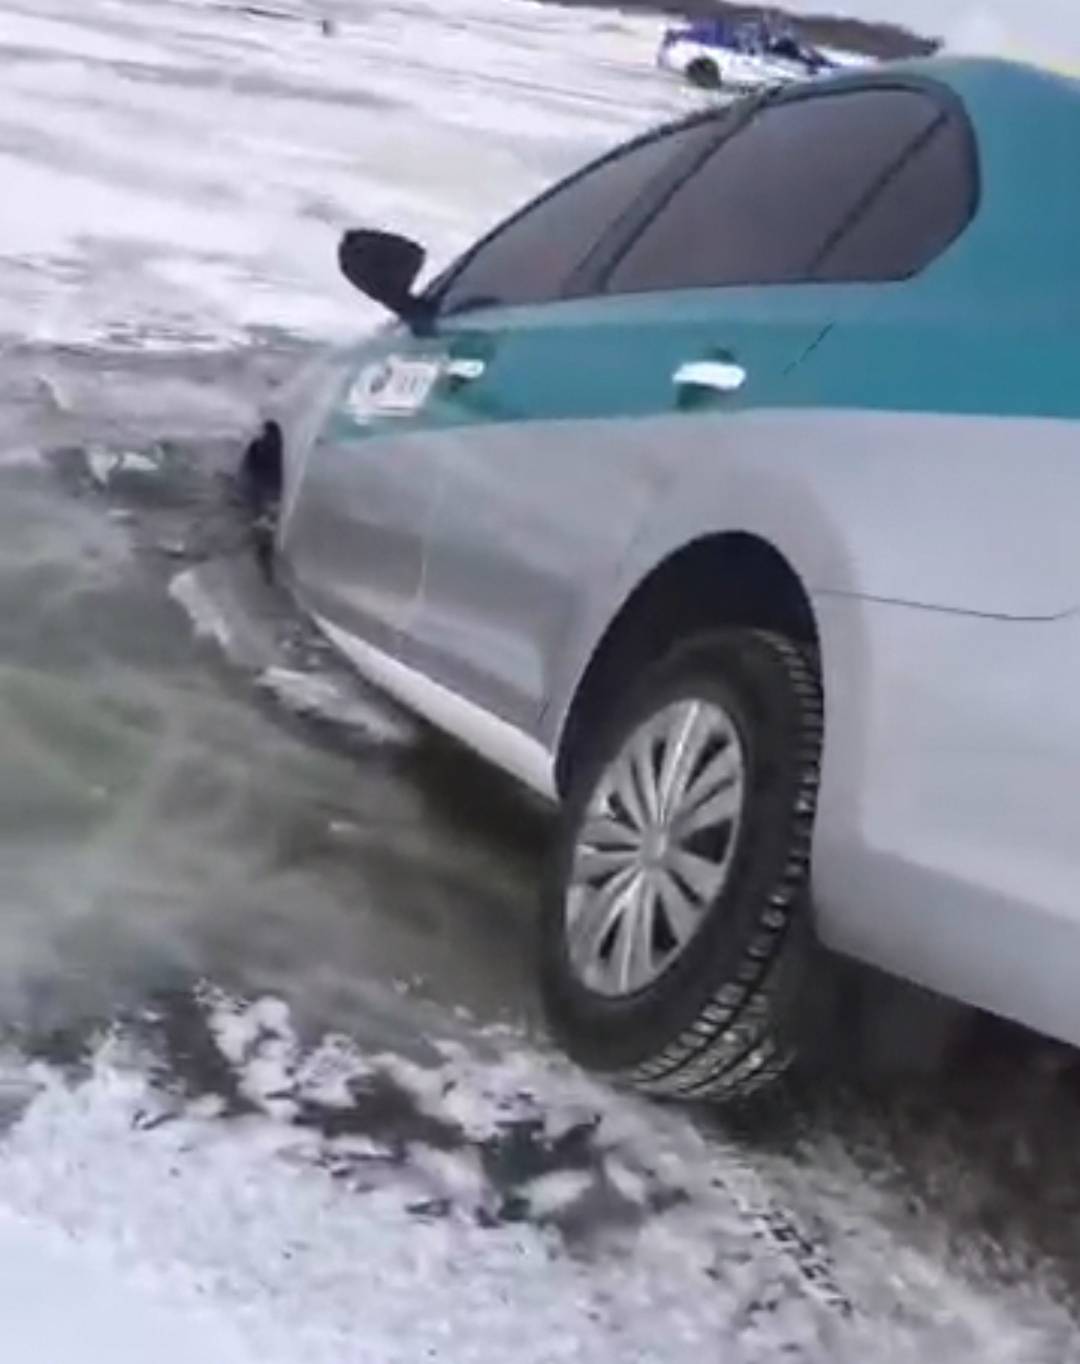 出租车的三个轮子都陷在了冰窟窿里,车头已经浸在了水里